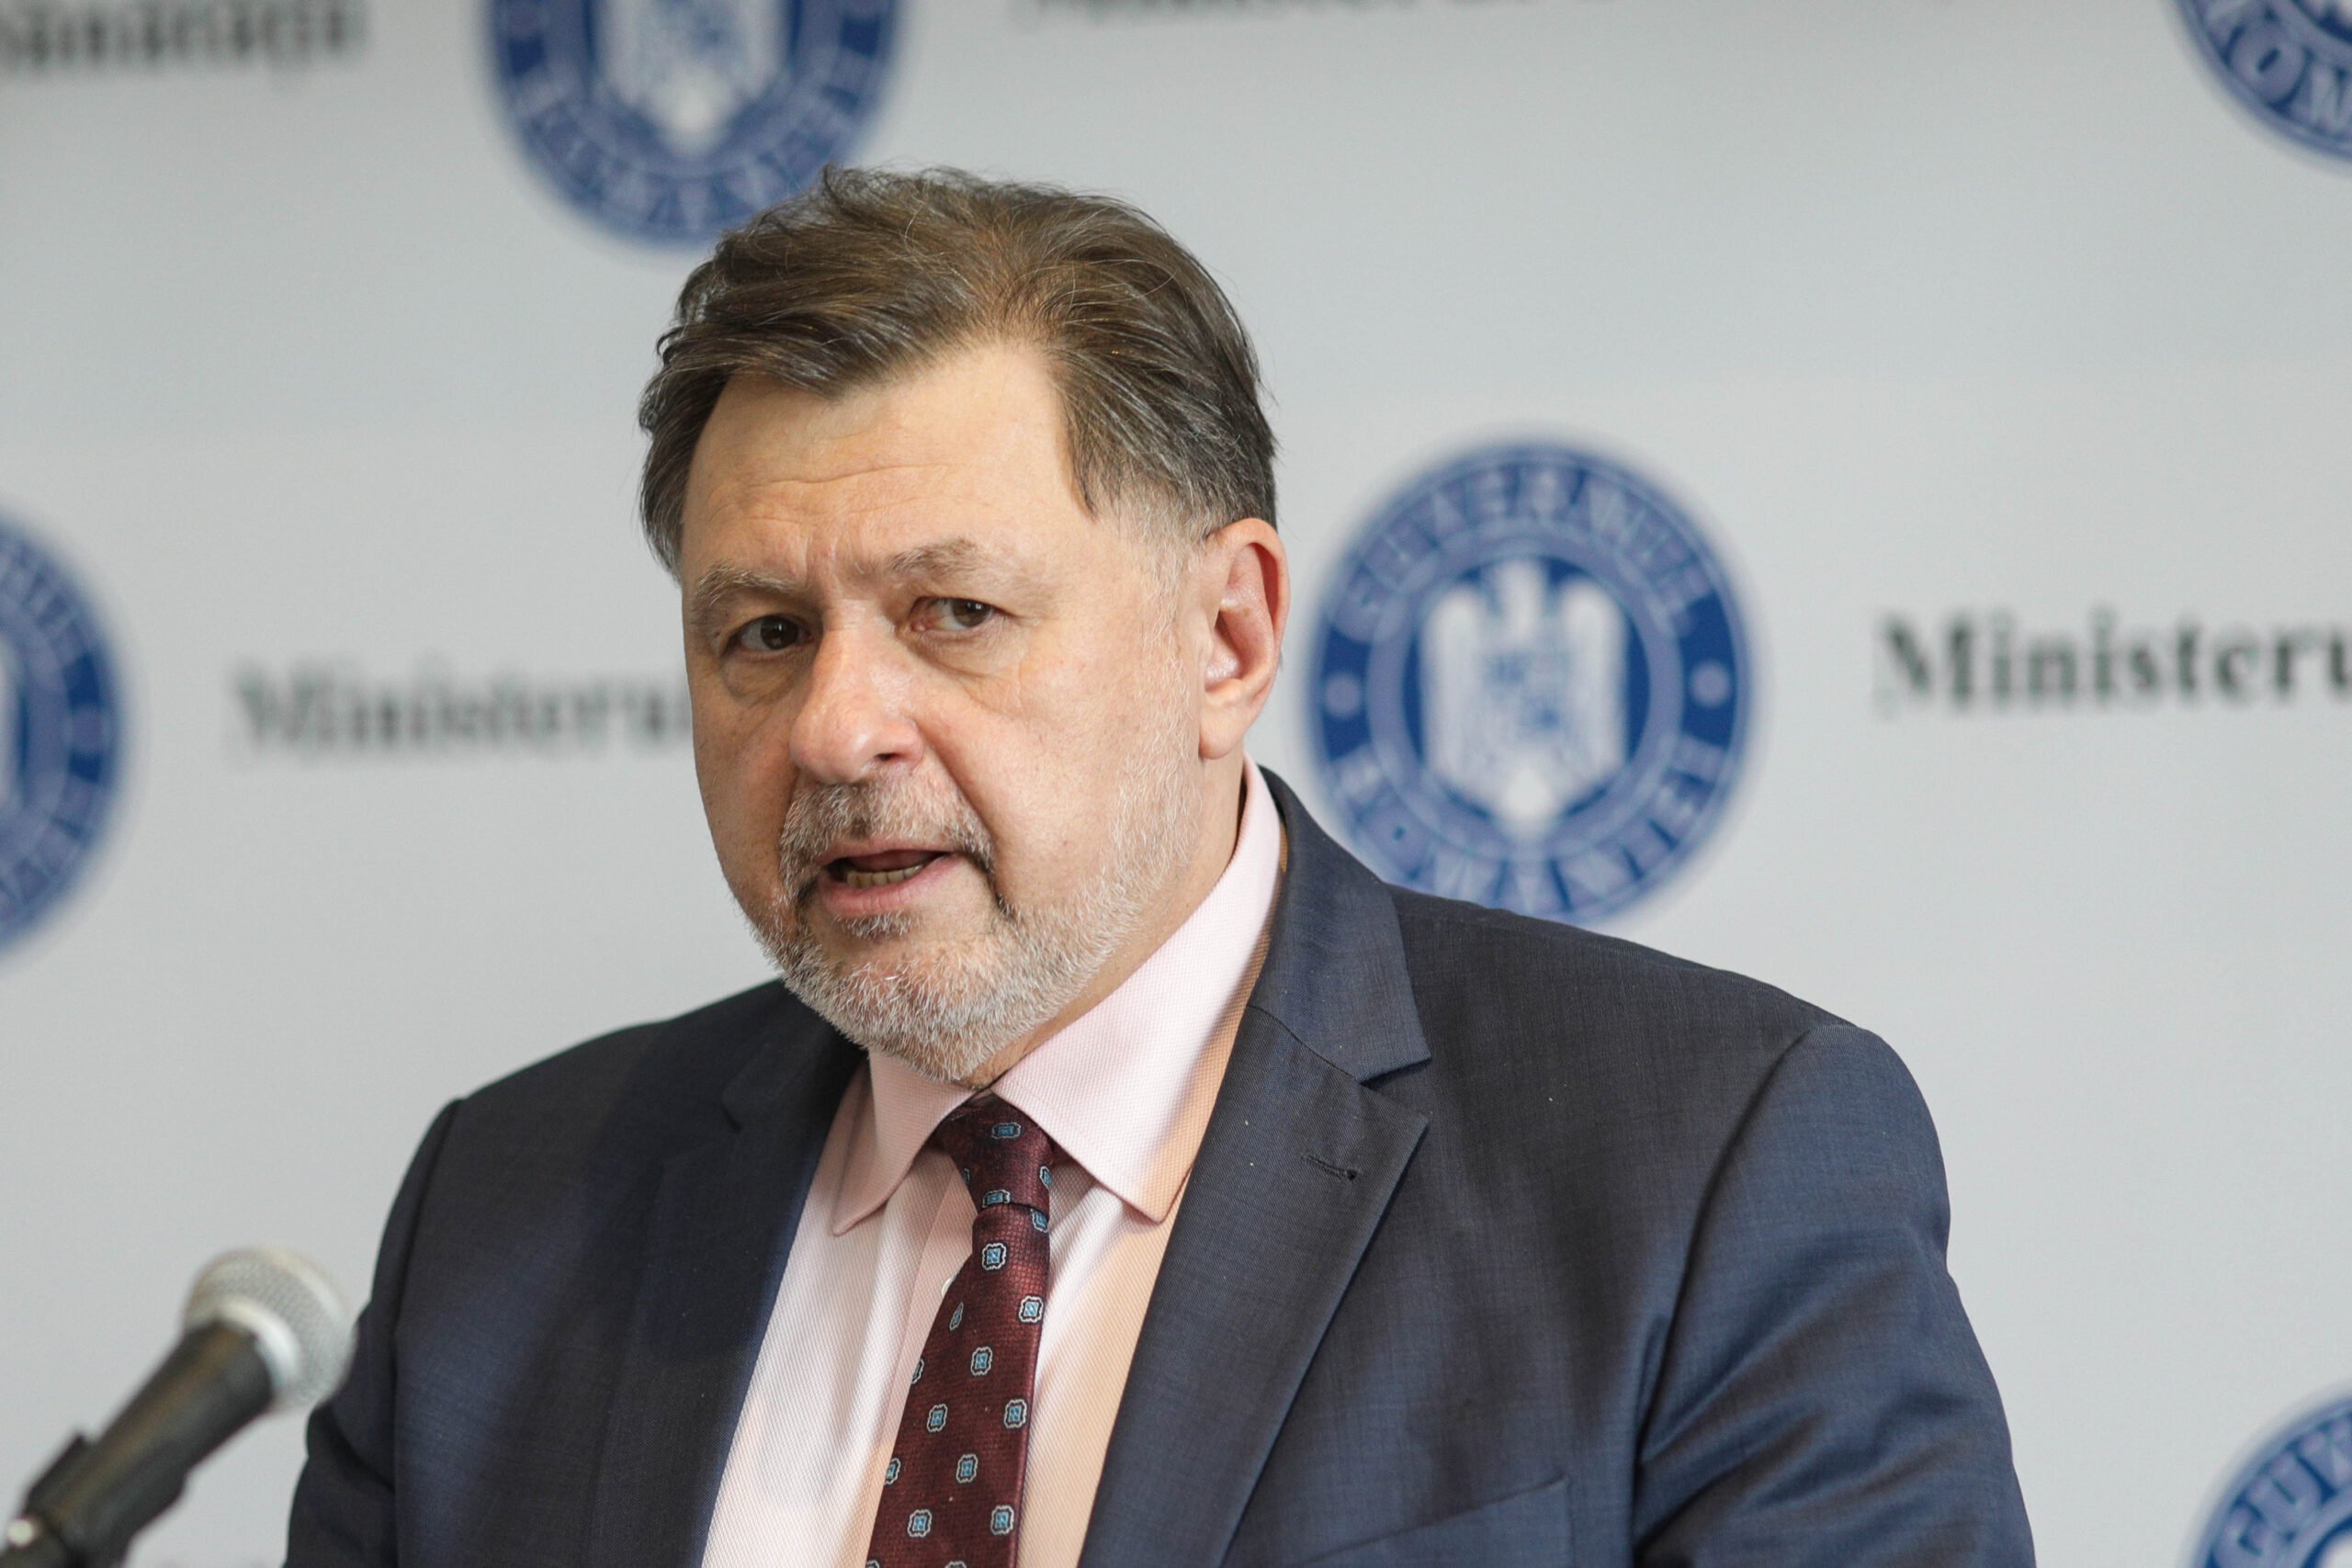 Actualul vaccin nu mai oprește transmiterea COVID-19, spune Alexandru Rafila,ministrul sănătății